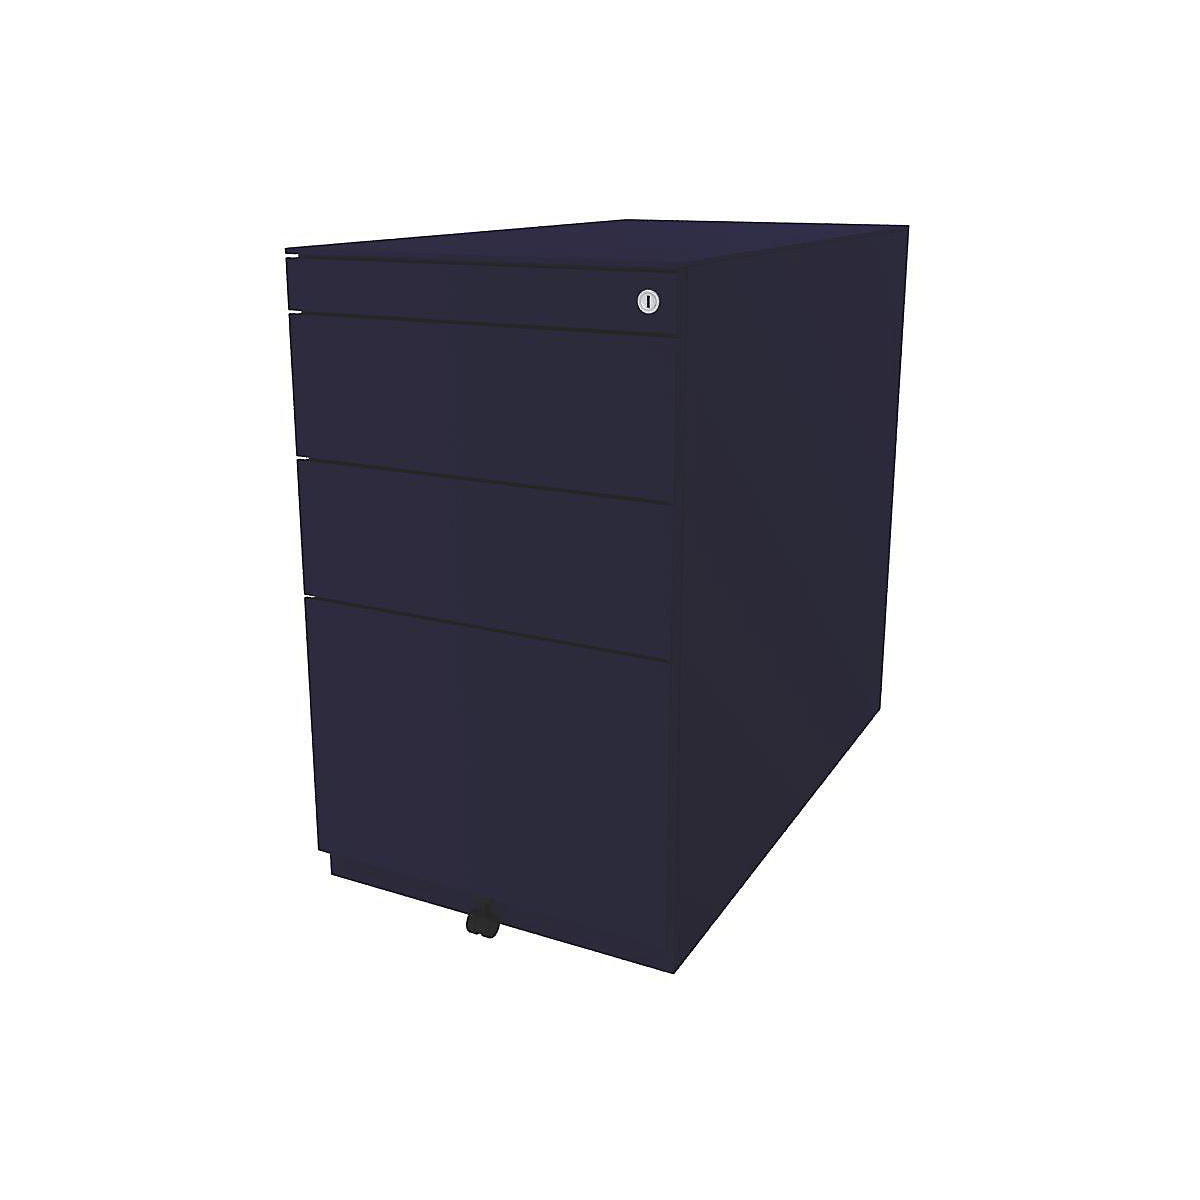 BISLEY Standcontainer Note™, mit 2 Universalschubladen, 1 Hängeregistratur, mit Top, Tiefe 775 mm, oxfordblau